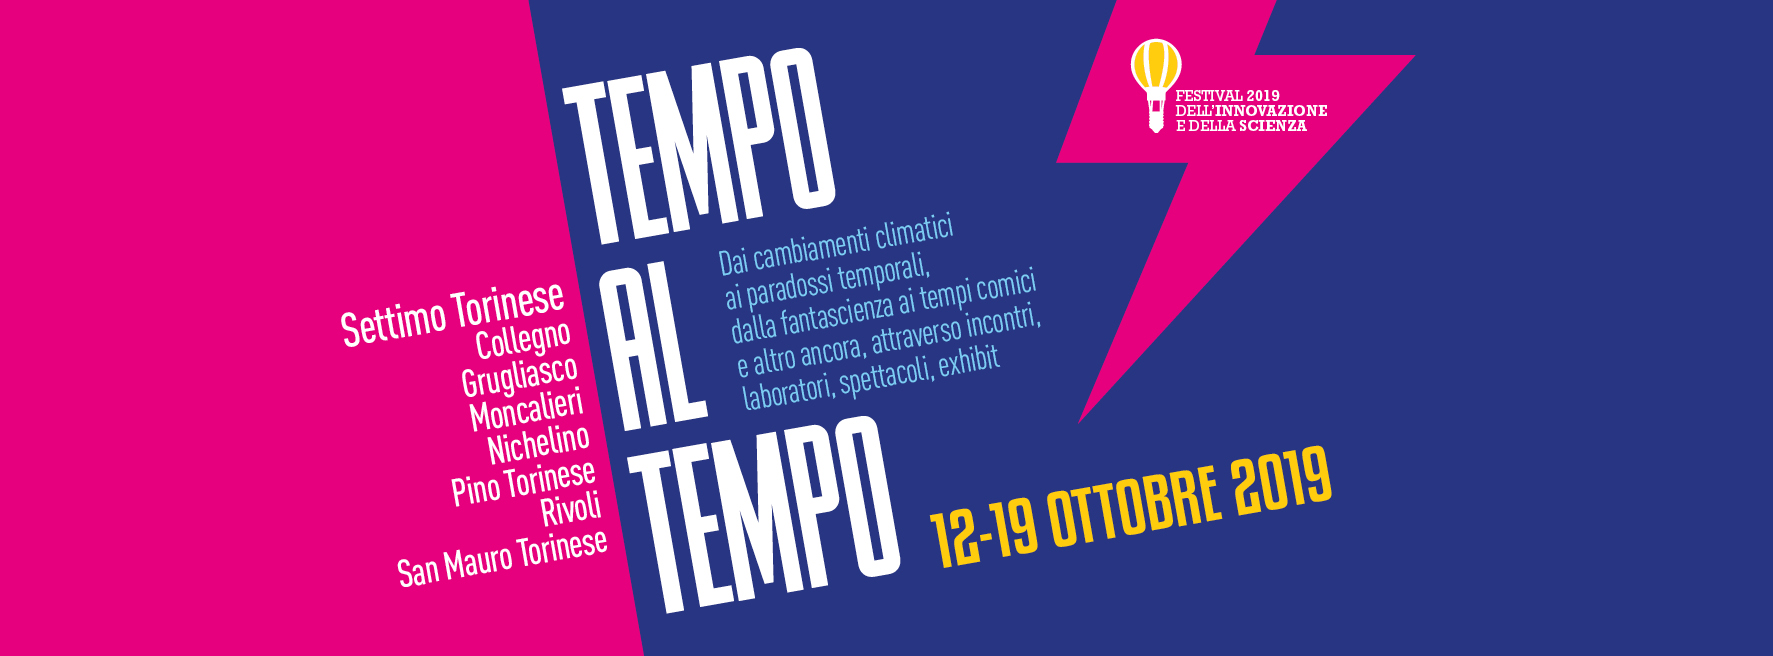 settimo-torinese-a-ottobre-la-settima-edizione-del-festival-piu-innovativo